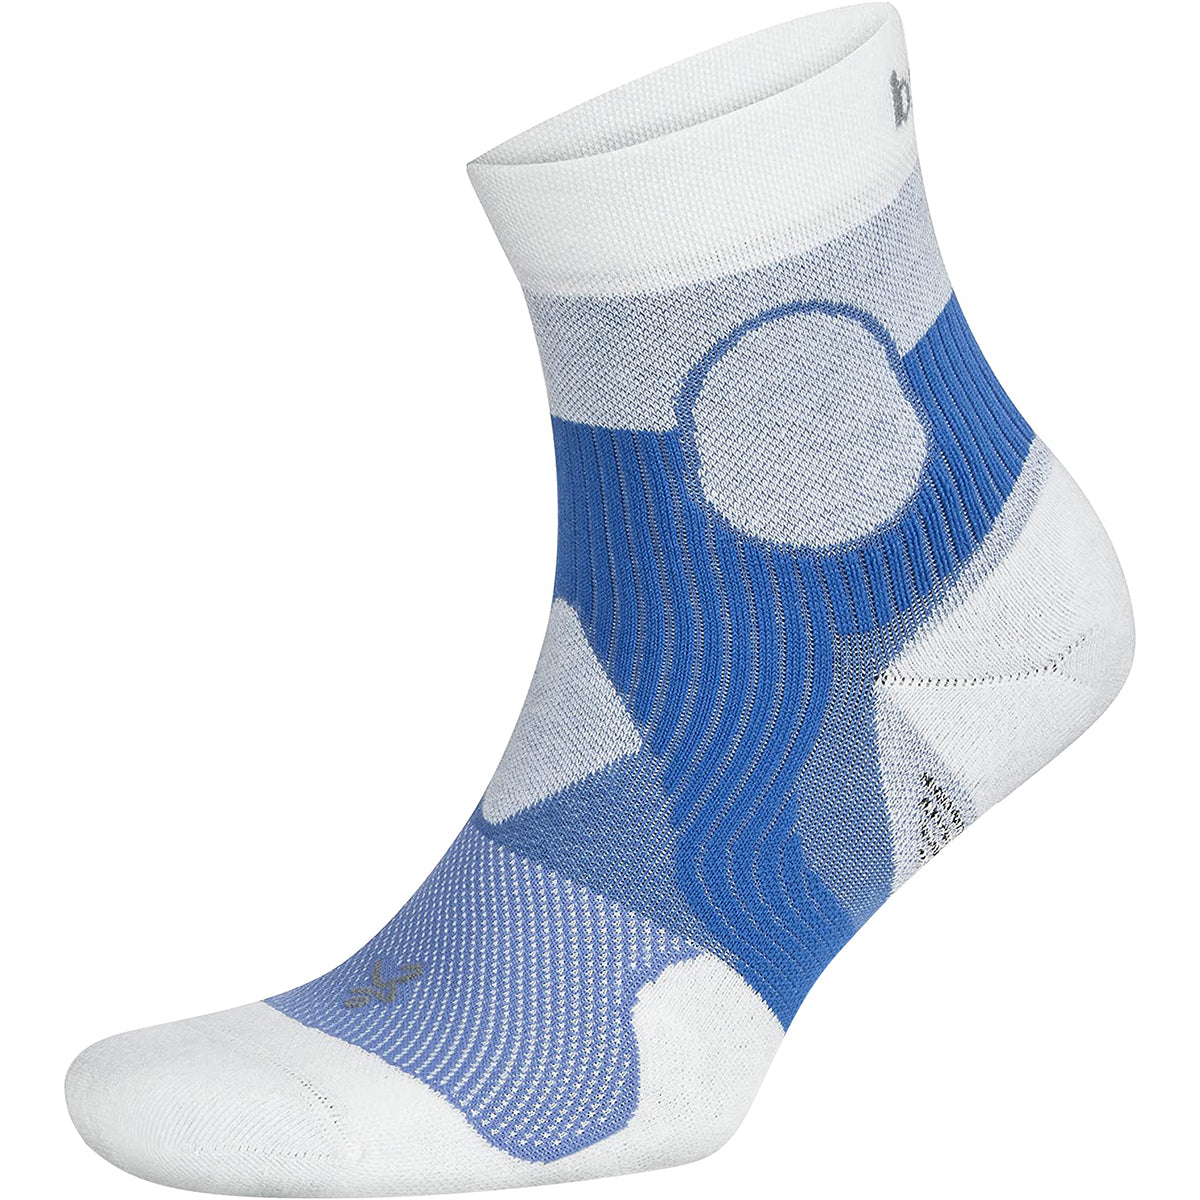 Balega Support Quarter Length Running Socks - Palace Blue/White Balega